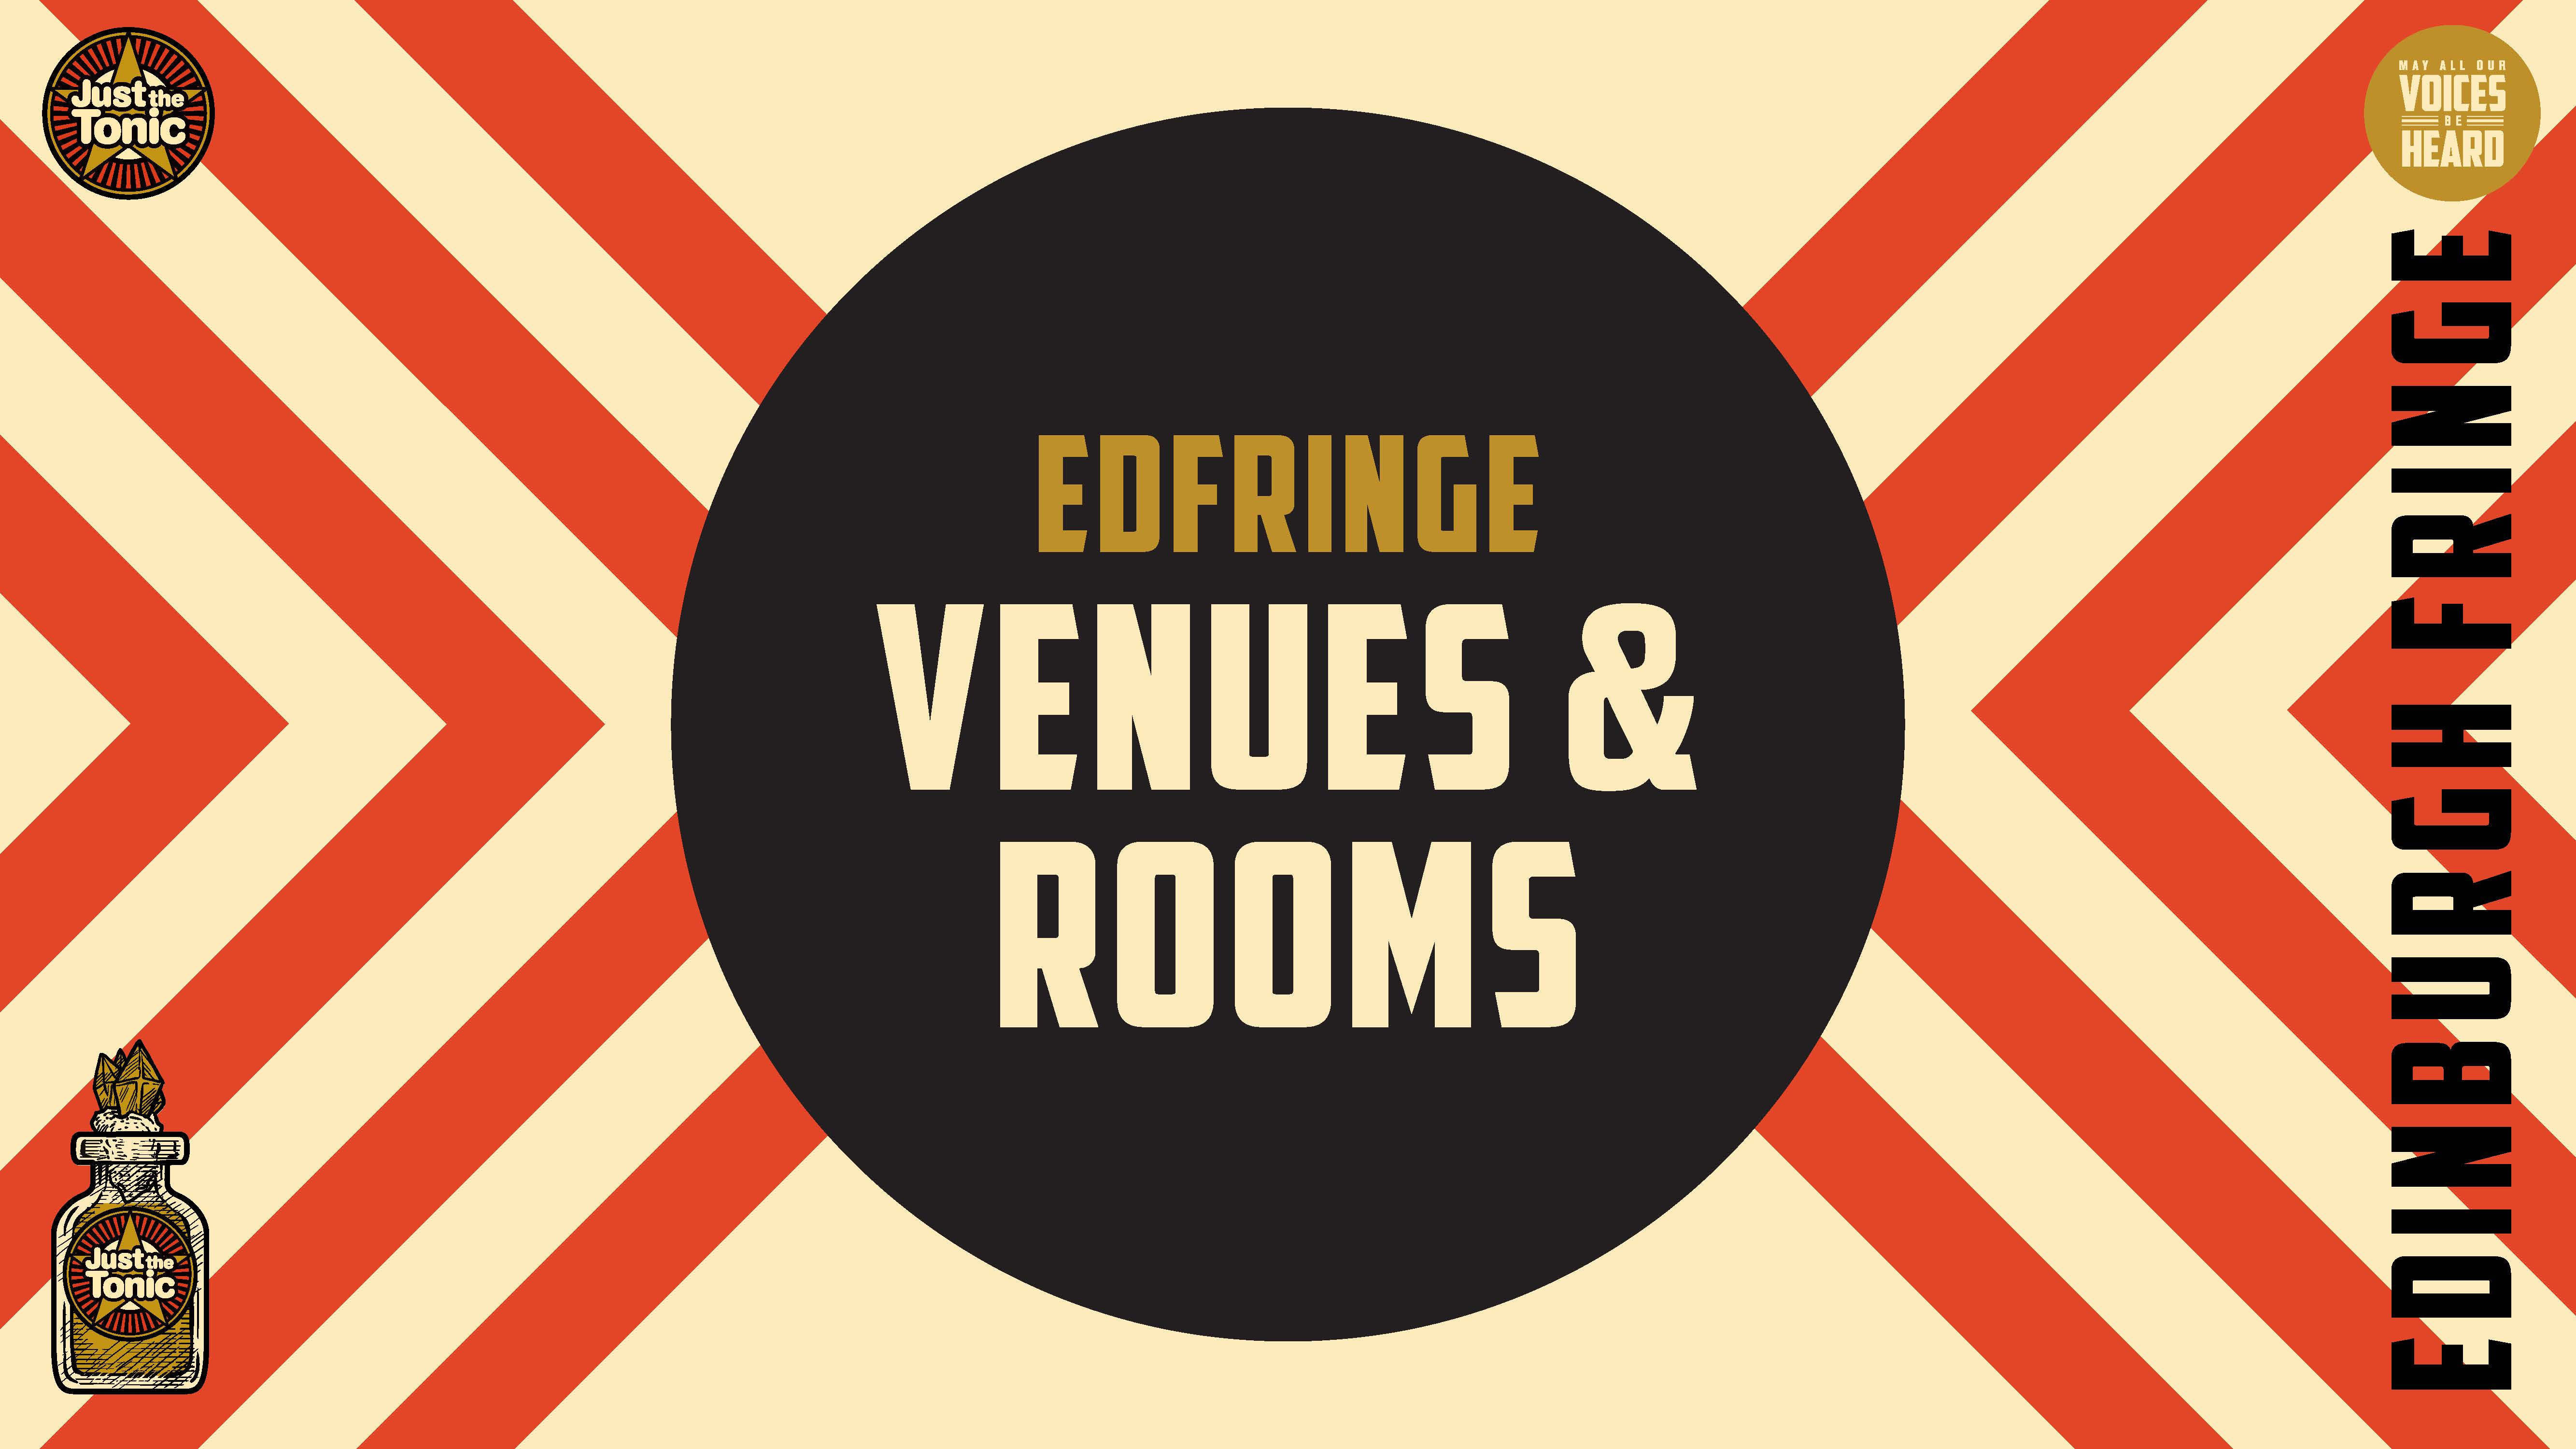 Edinburgh Festival (Edfringe) Venues available for comedy, theatre